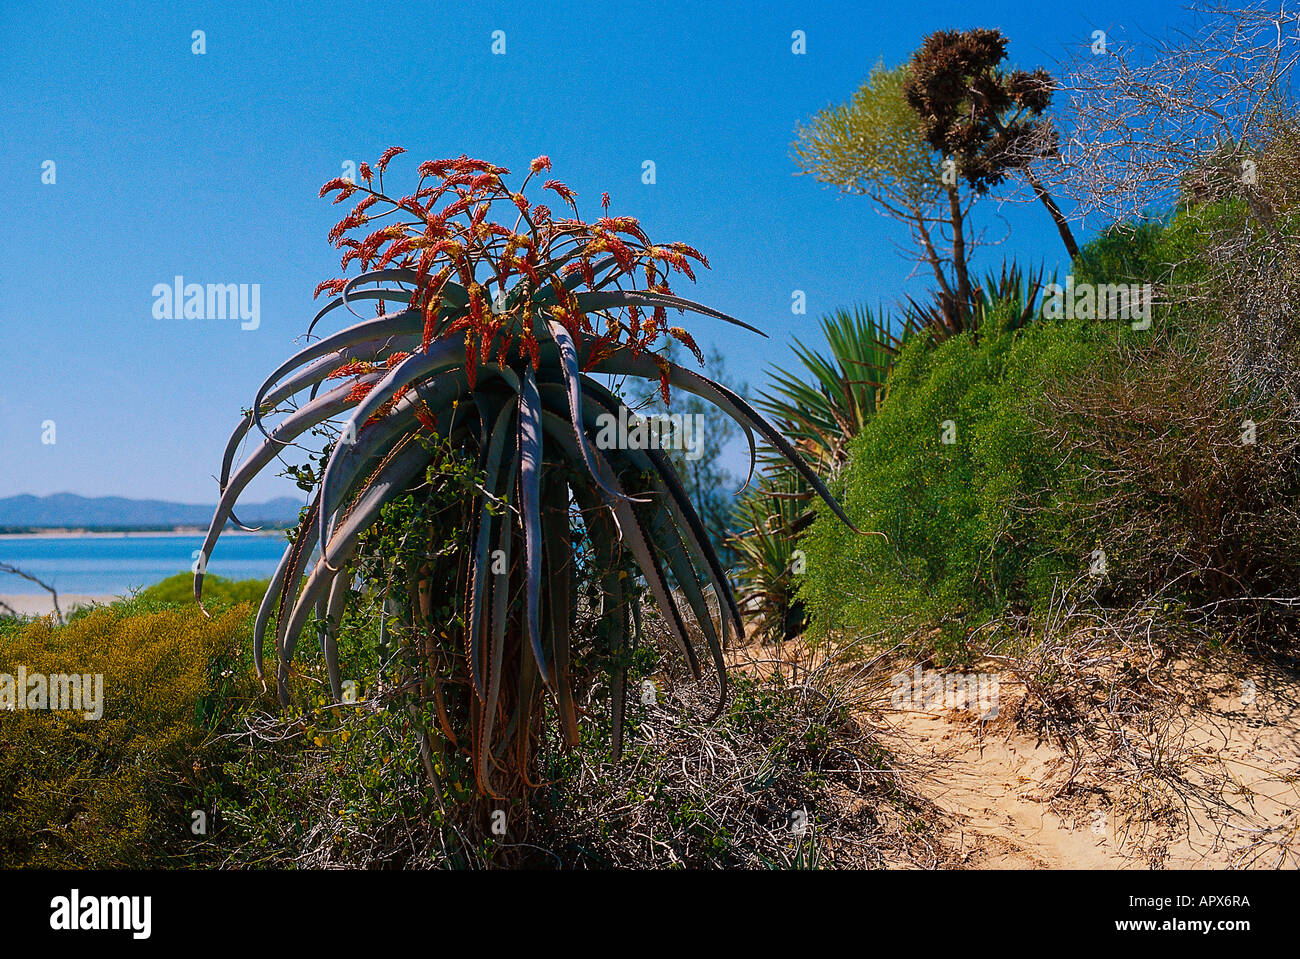 Aloe plant, at Lac Anosy, Madagascar Stock Photo